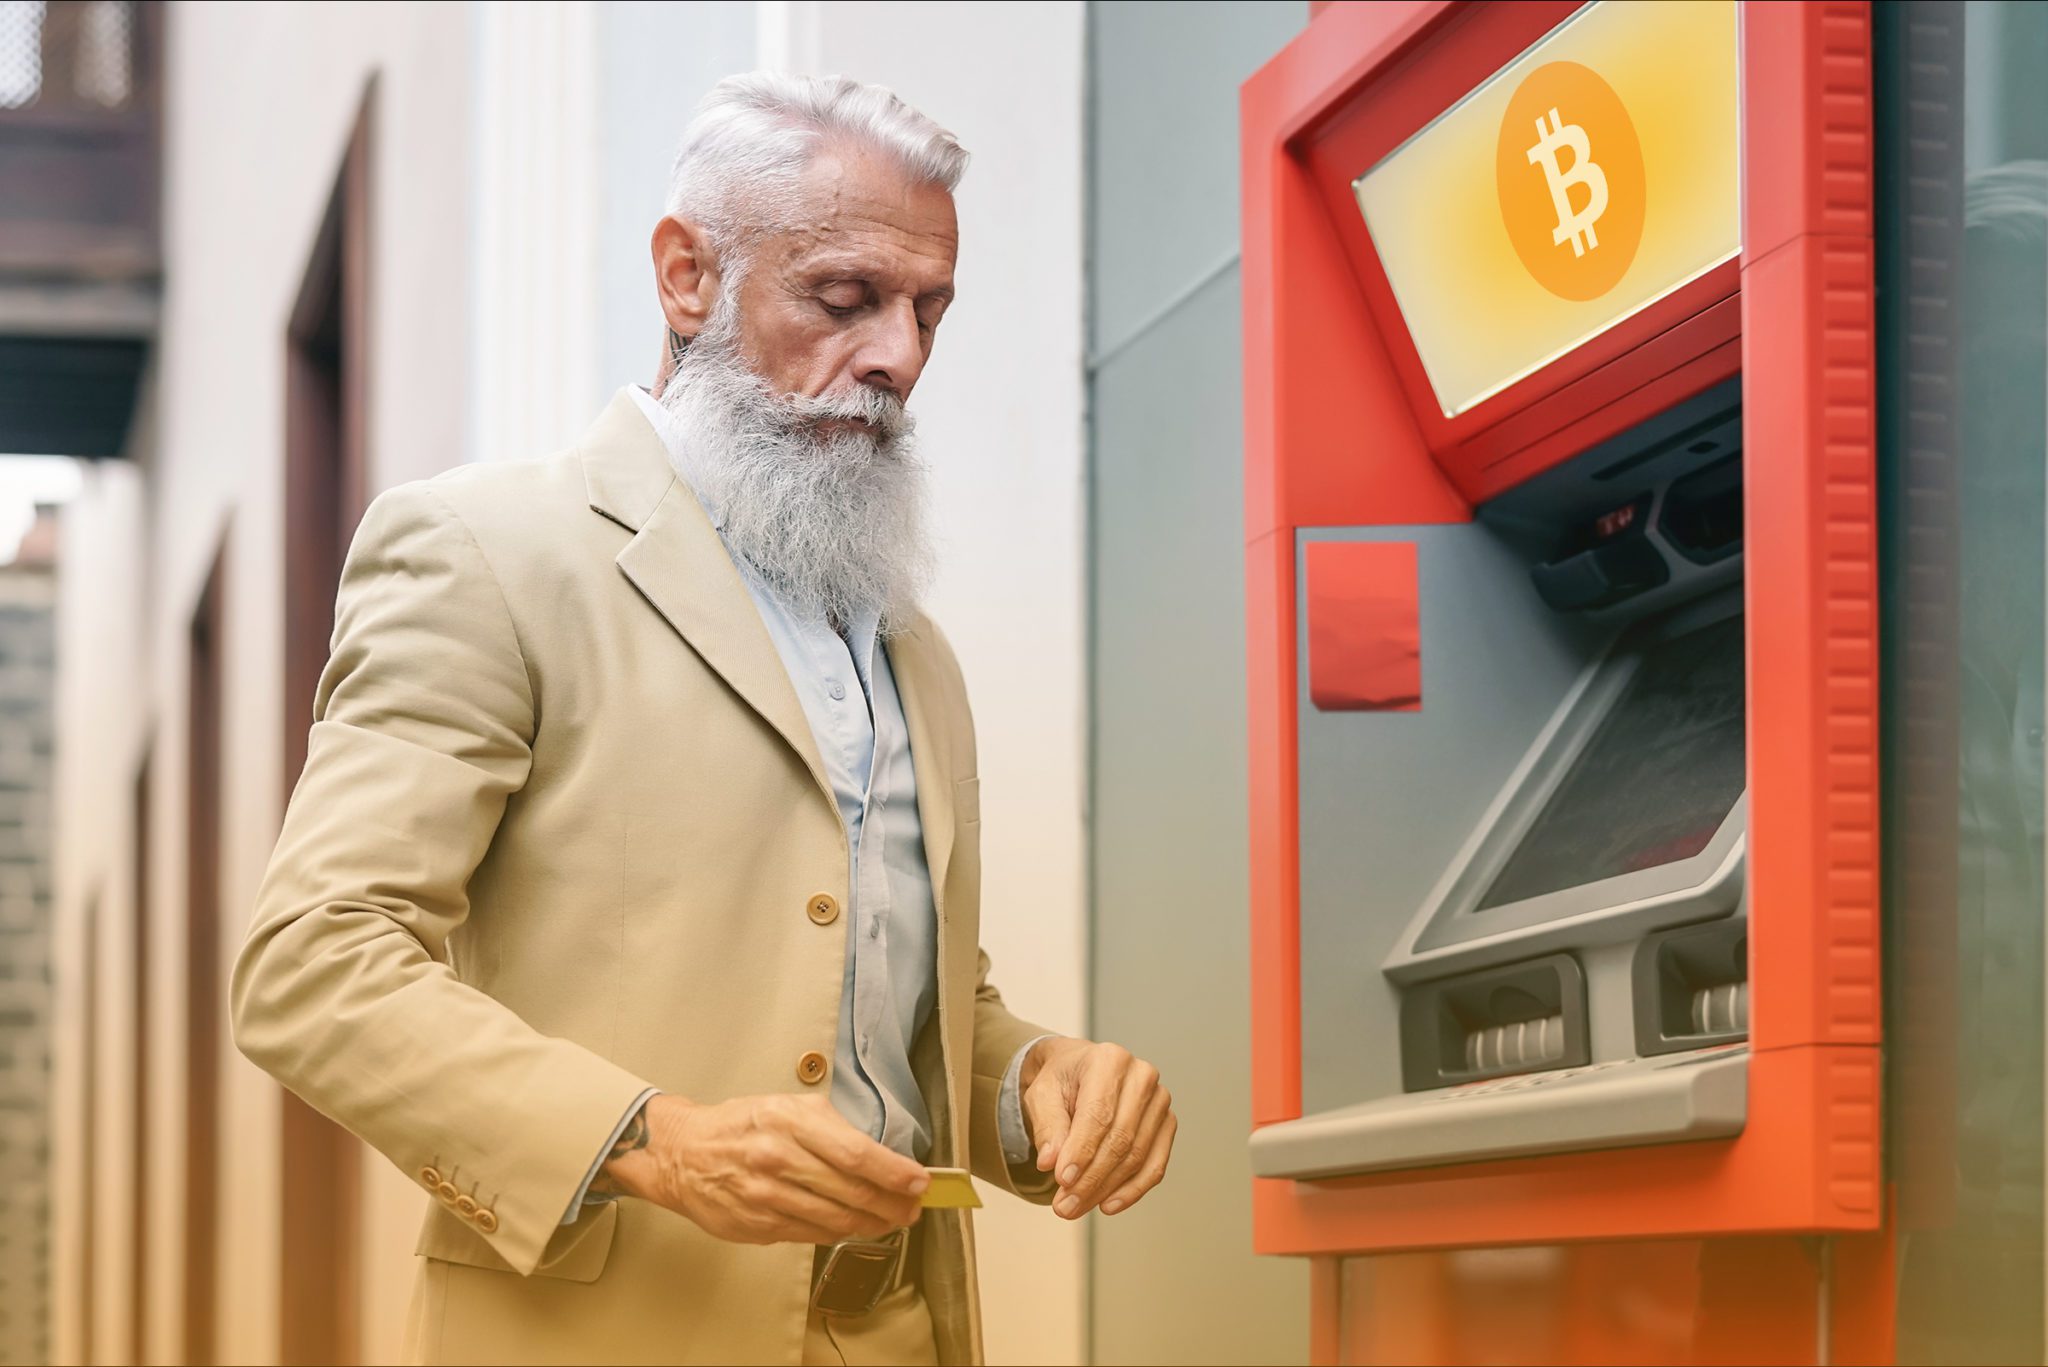 Bitcoin ATM Near Me | Cryptobase ATM